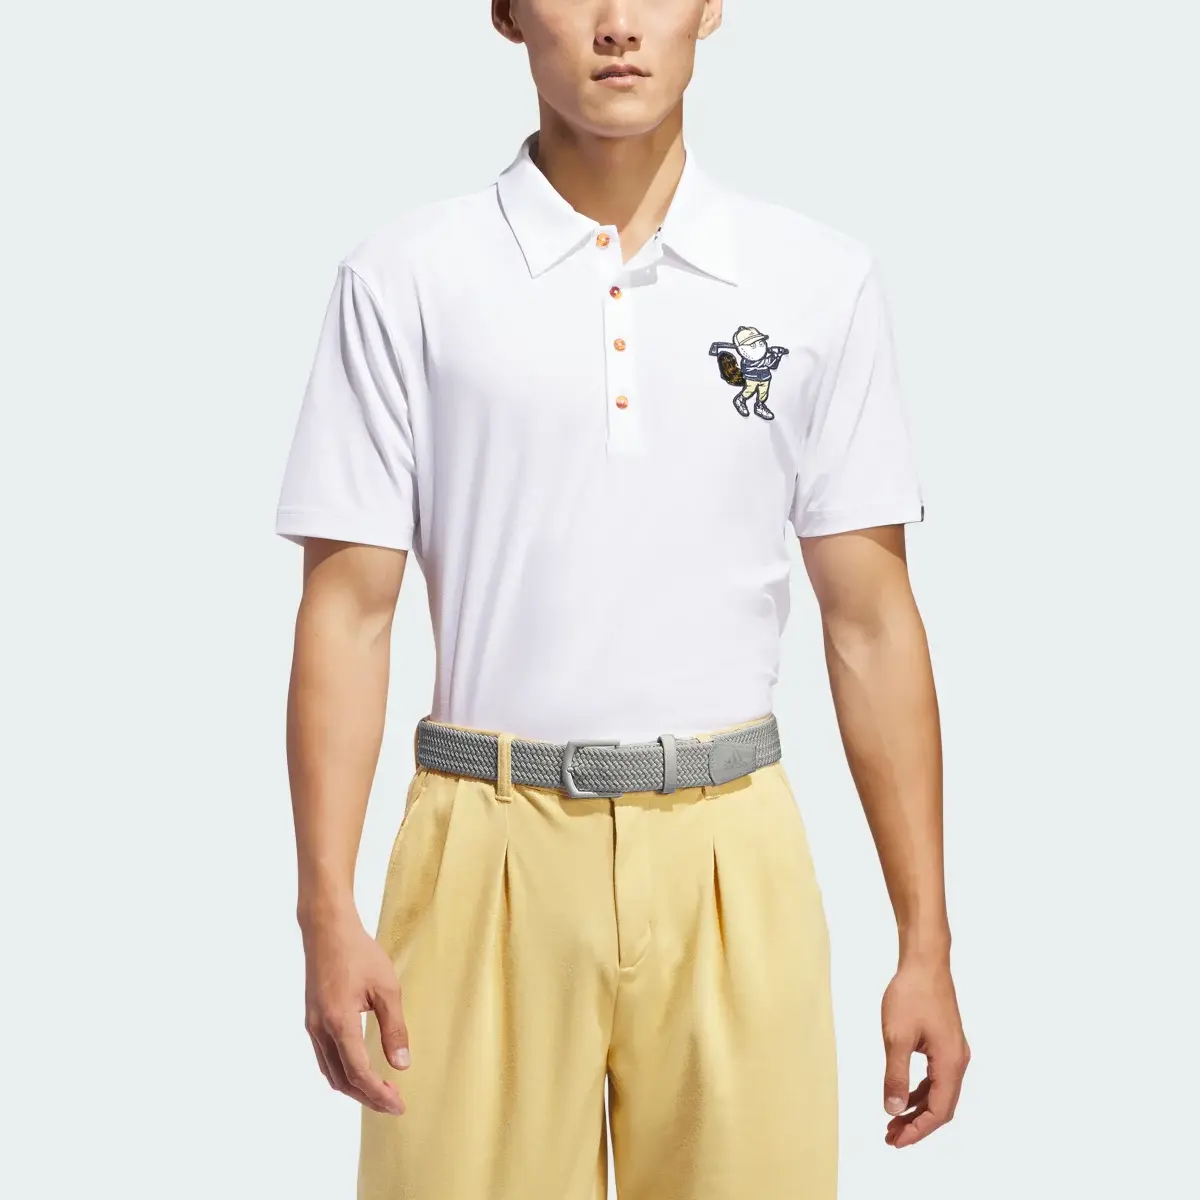 Adidas Koszulka Malbon Polo. 1